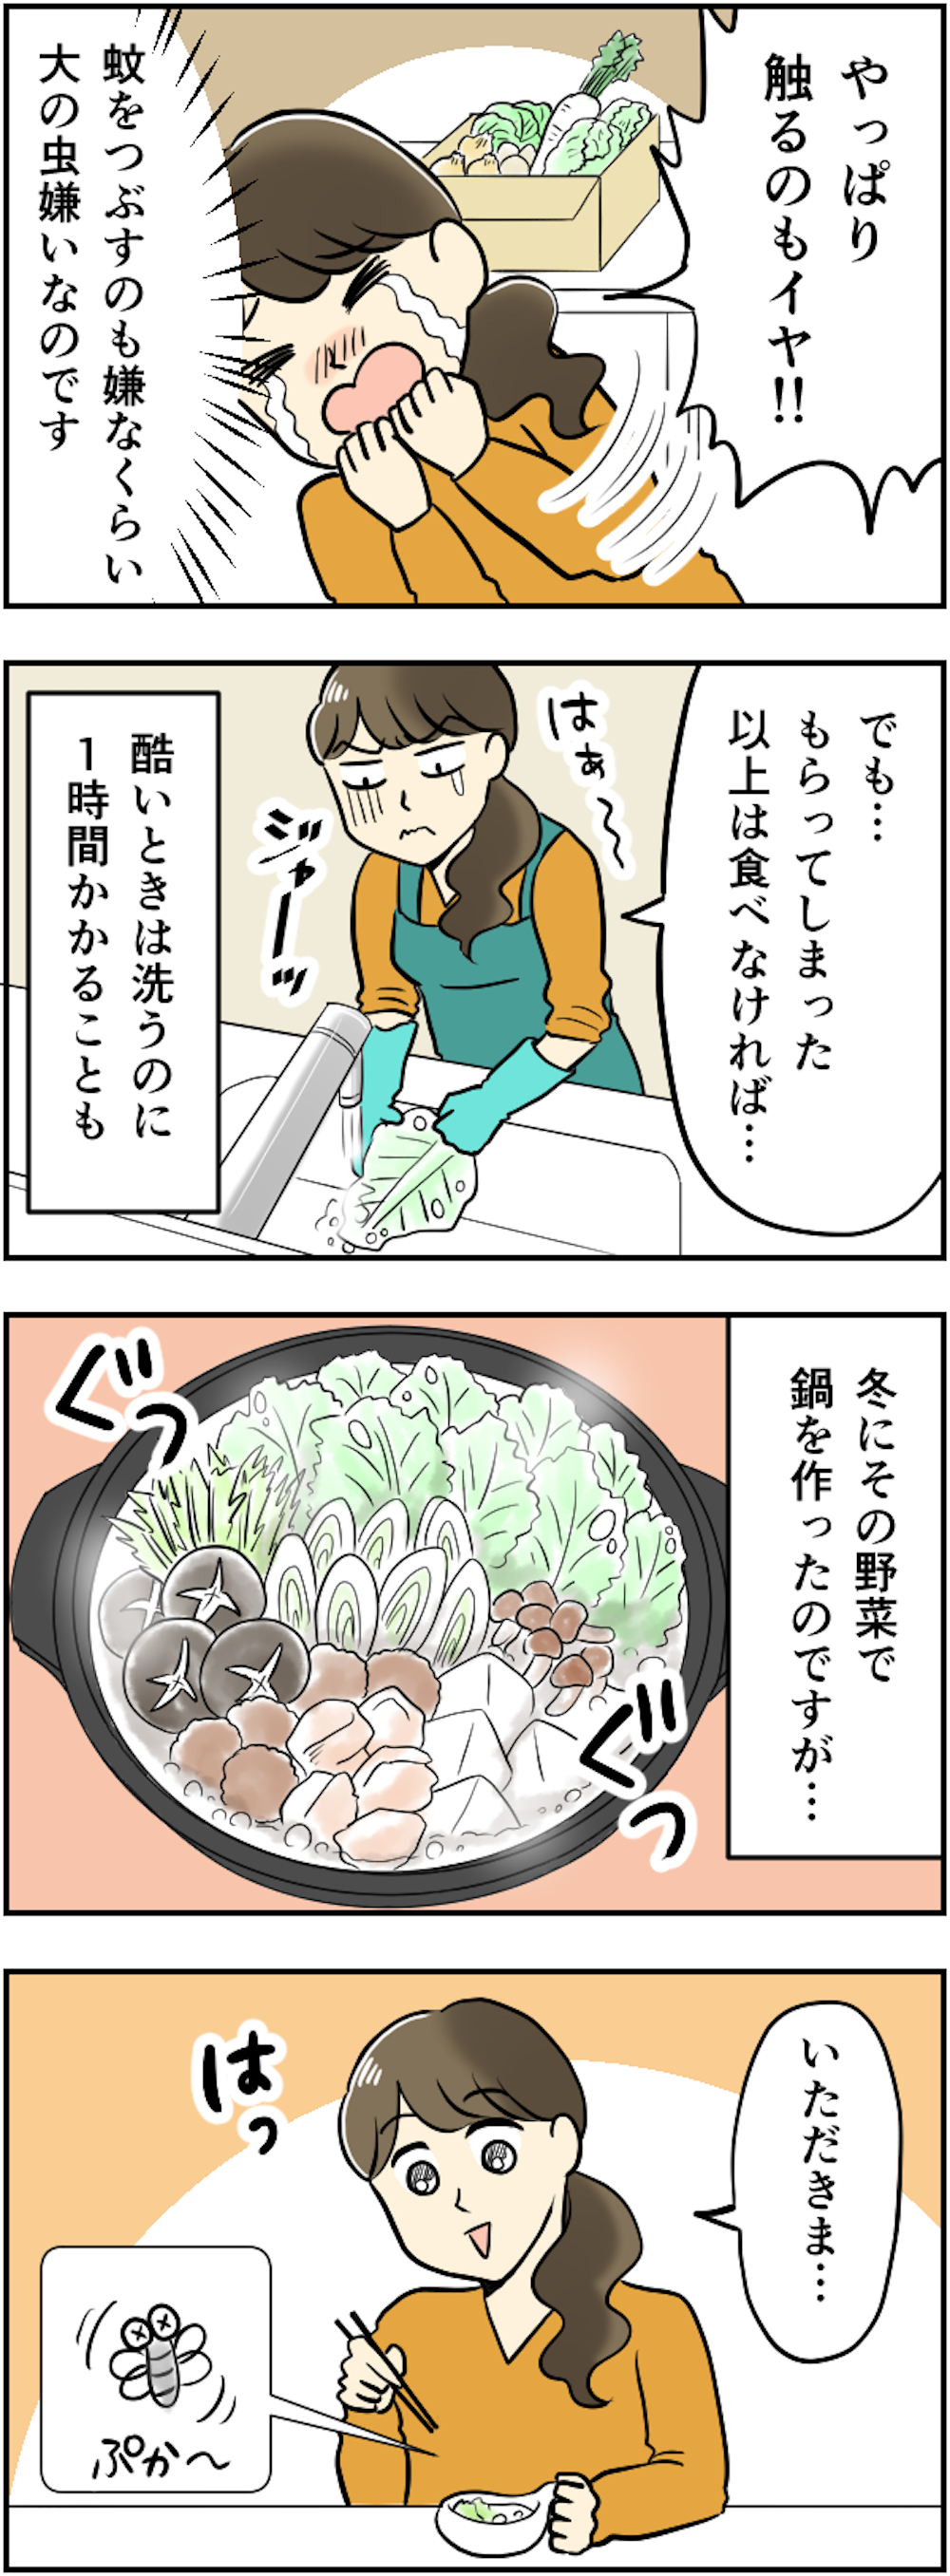 鍋料理に「虫」がプカ～!! あんなに洗ったのに...義父母がくれる「無農薬野菜」が困る！【漫画】 253kansei_004.png